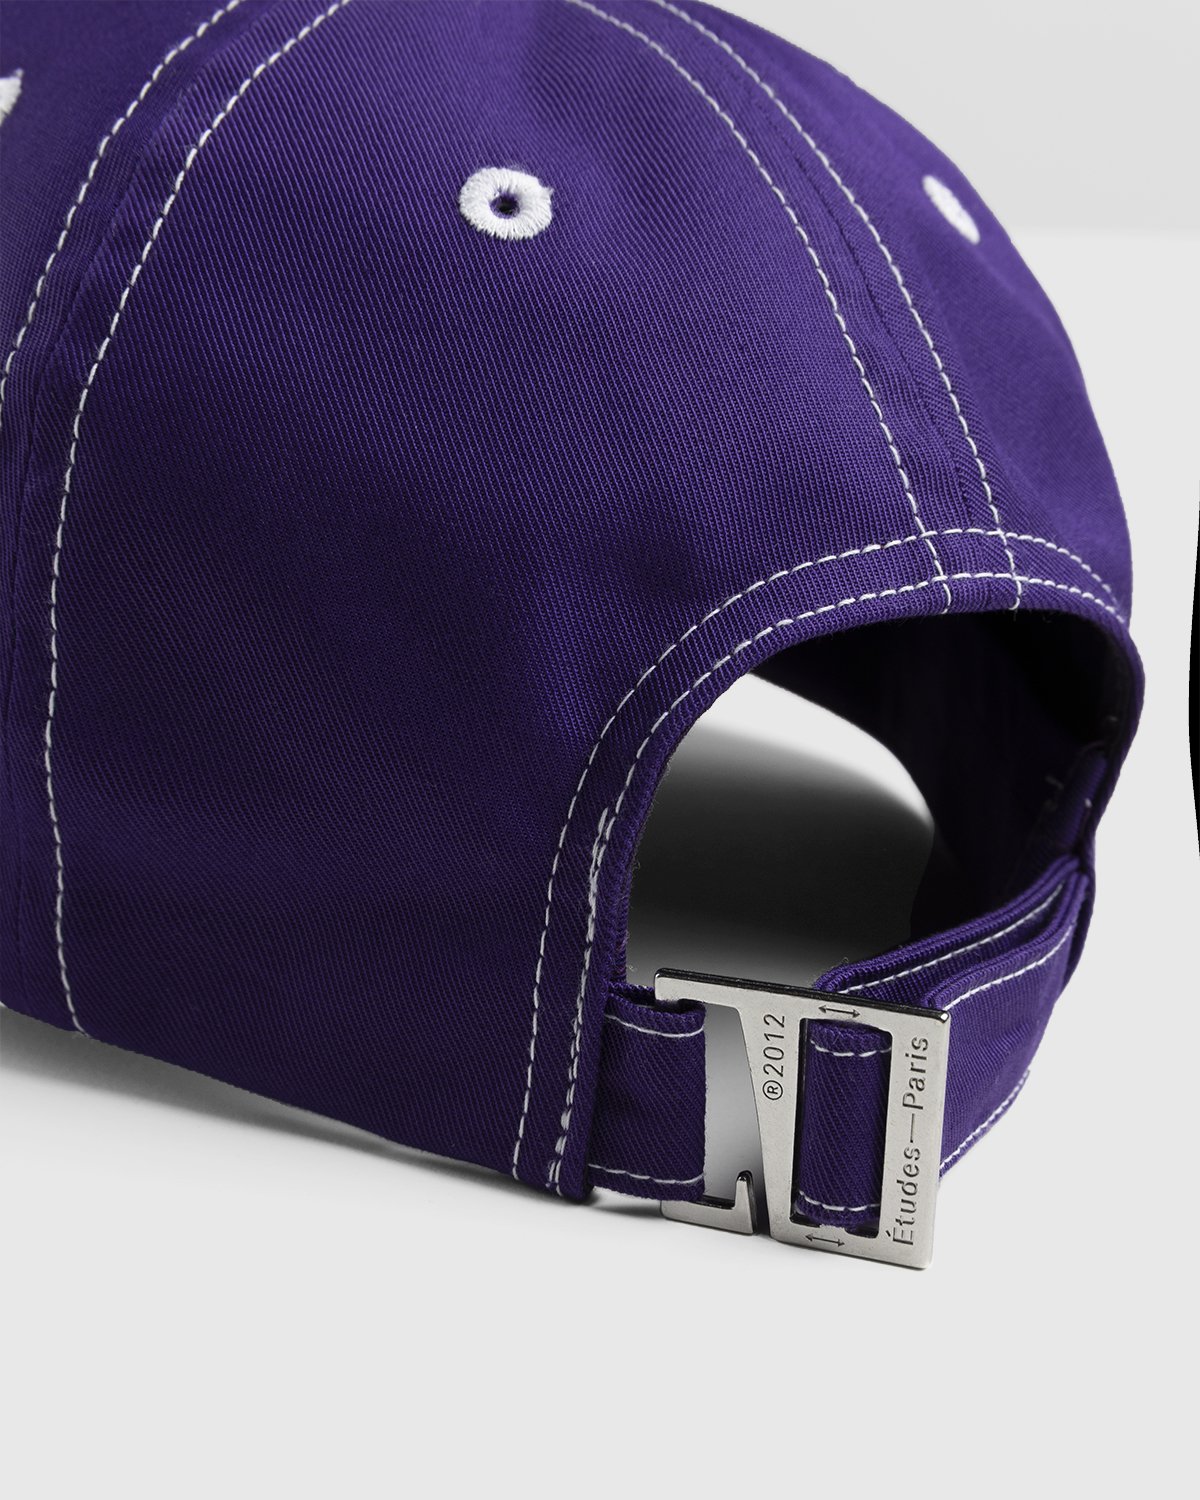 Martine Syms x Études - Booster MS Purple Cap - Accessories - Purple - Image 5